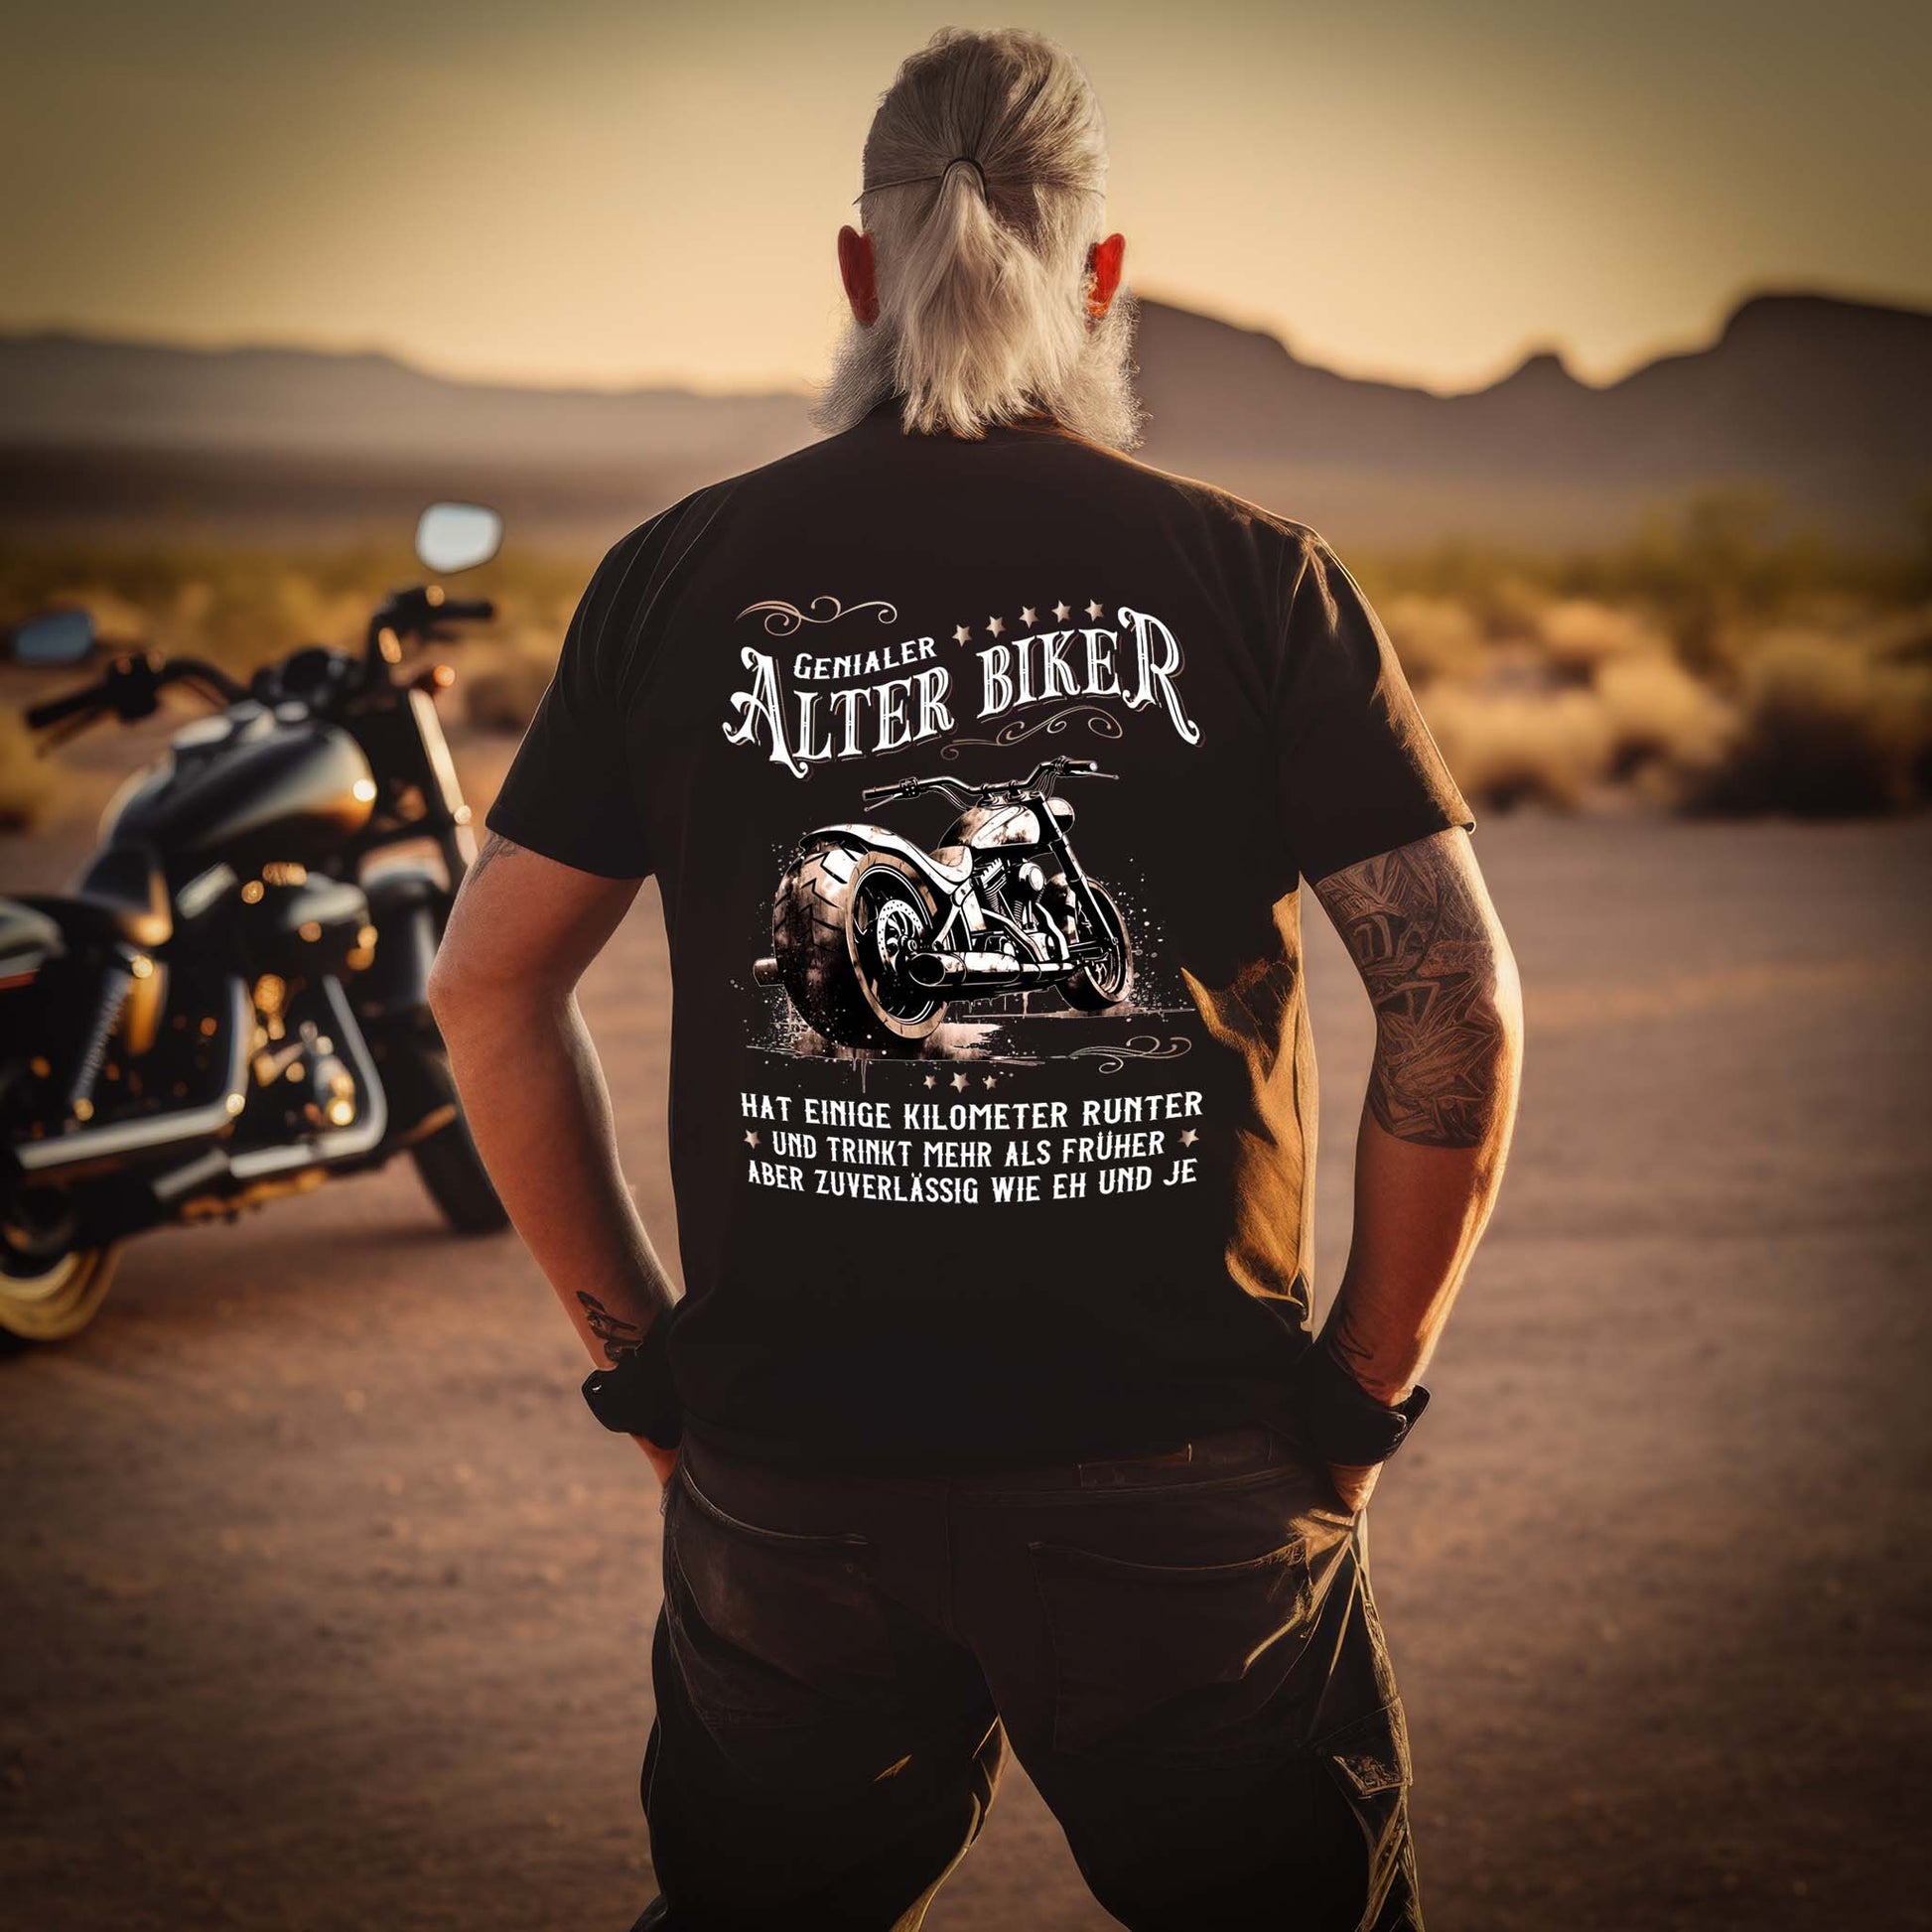 Ein Biker mit einem T-Shirt für Motorradfahrer von Wingbikers mit dem Aufdruck, Alter Biker - Einige Kilometer runter, trinkt mehr - aber zuverlässig wie eh und je - mit Back Print, in schwarz.